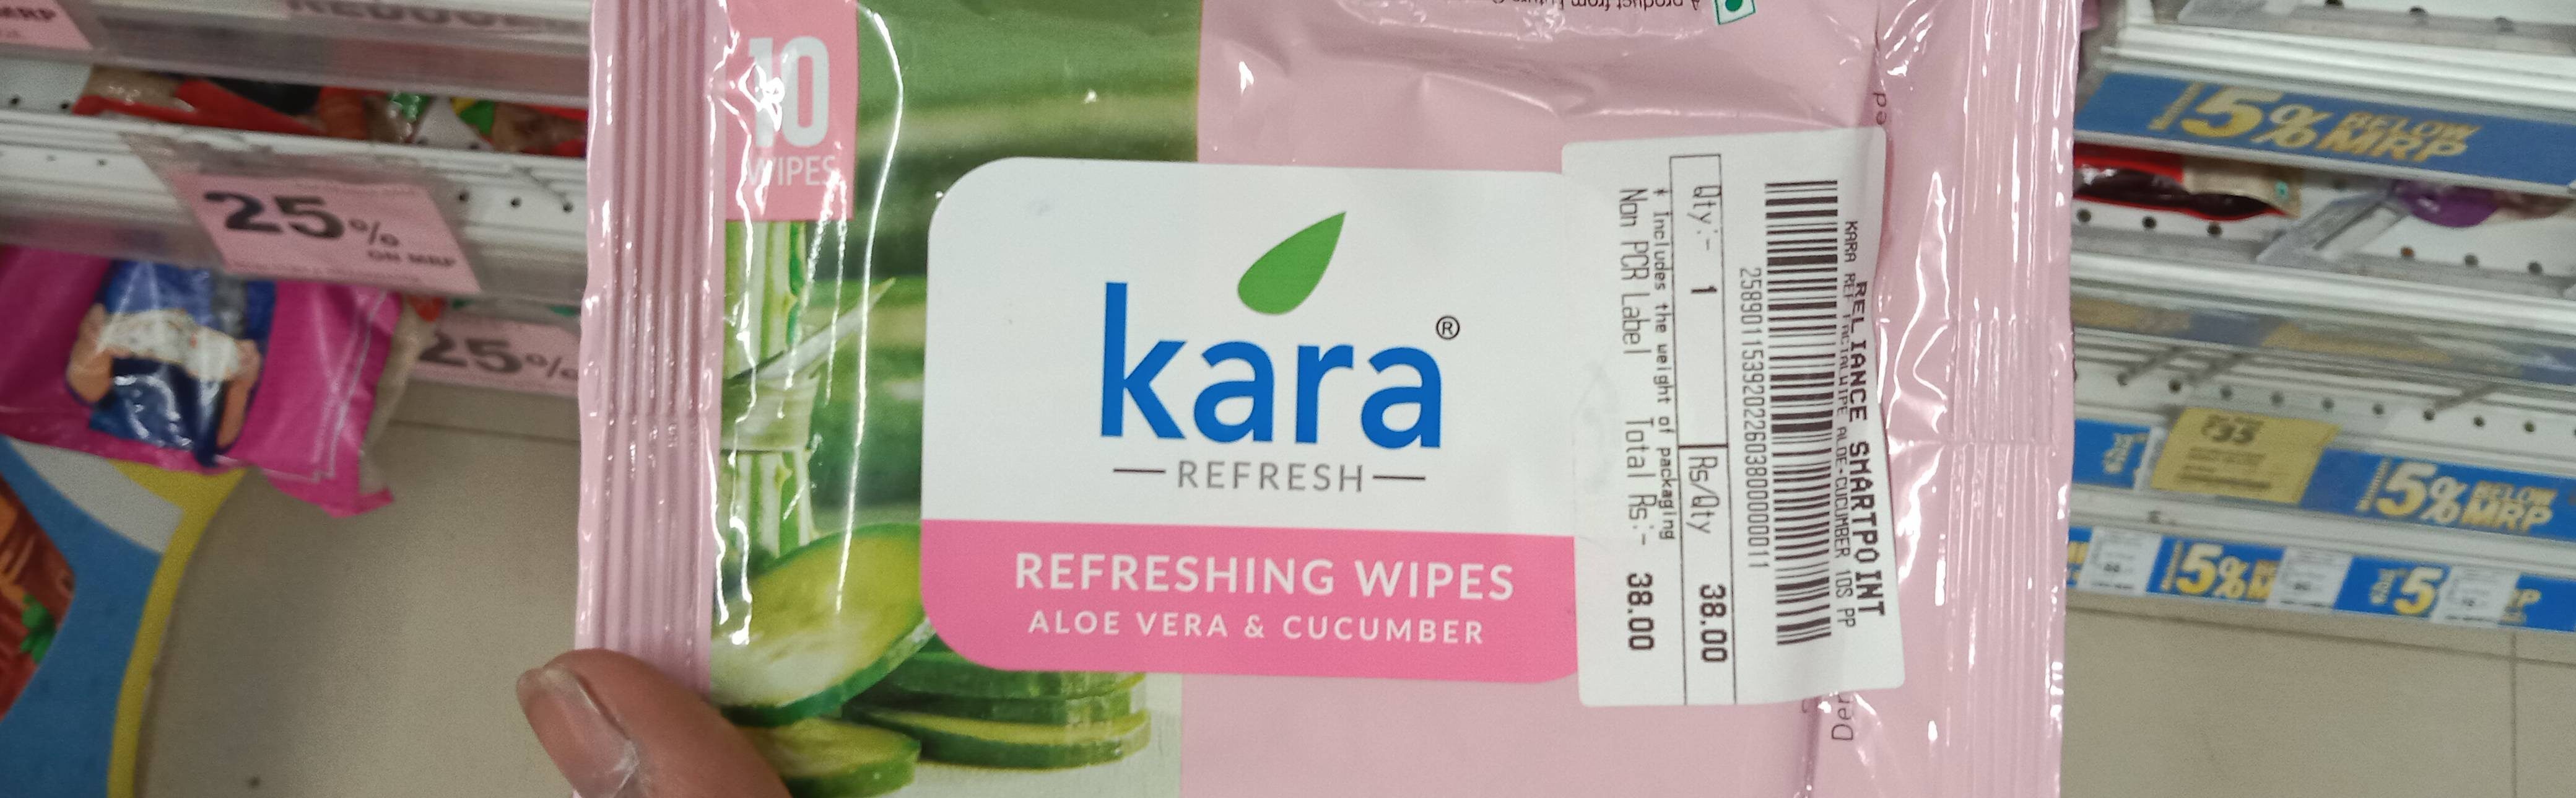 Kara Aloe vera & Cucumber Wipes - Продукт - en